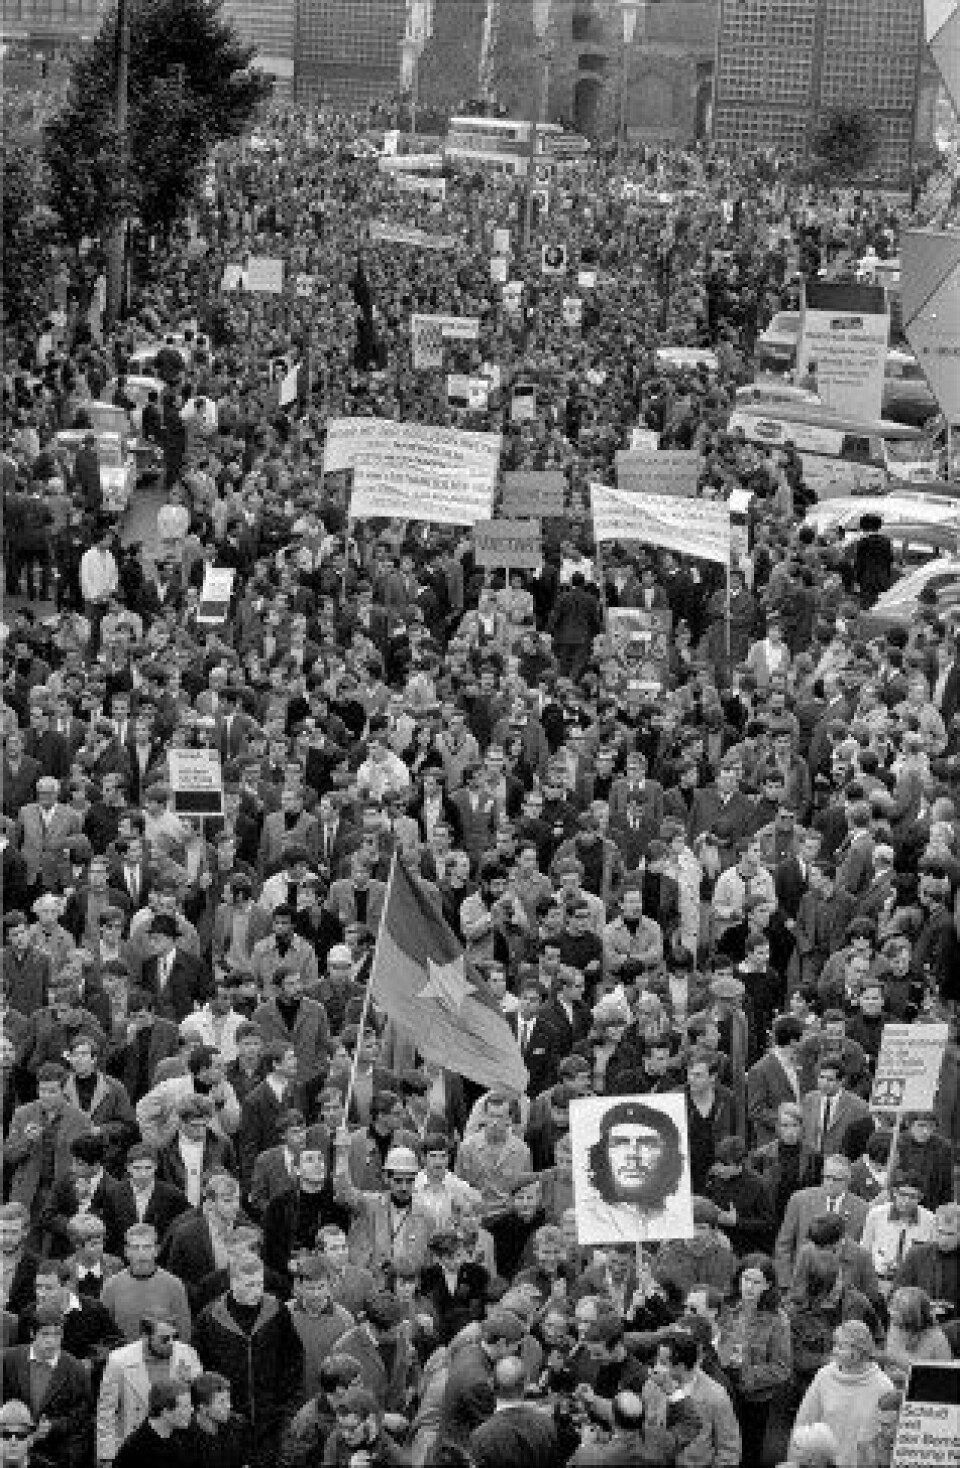 Adorno støttet ikke studentopprøret i slutten av 1960-tallet. (Foto: Wikimedia Commons).